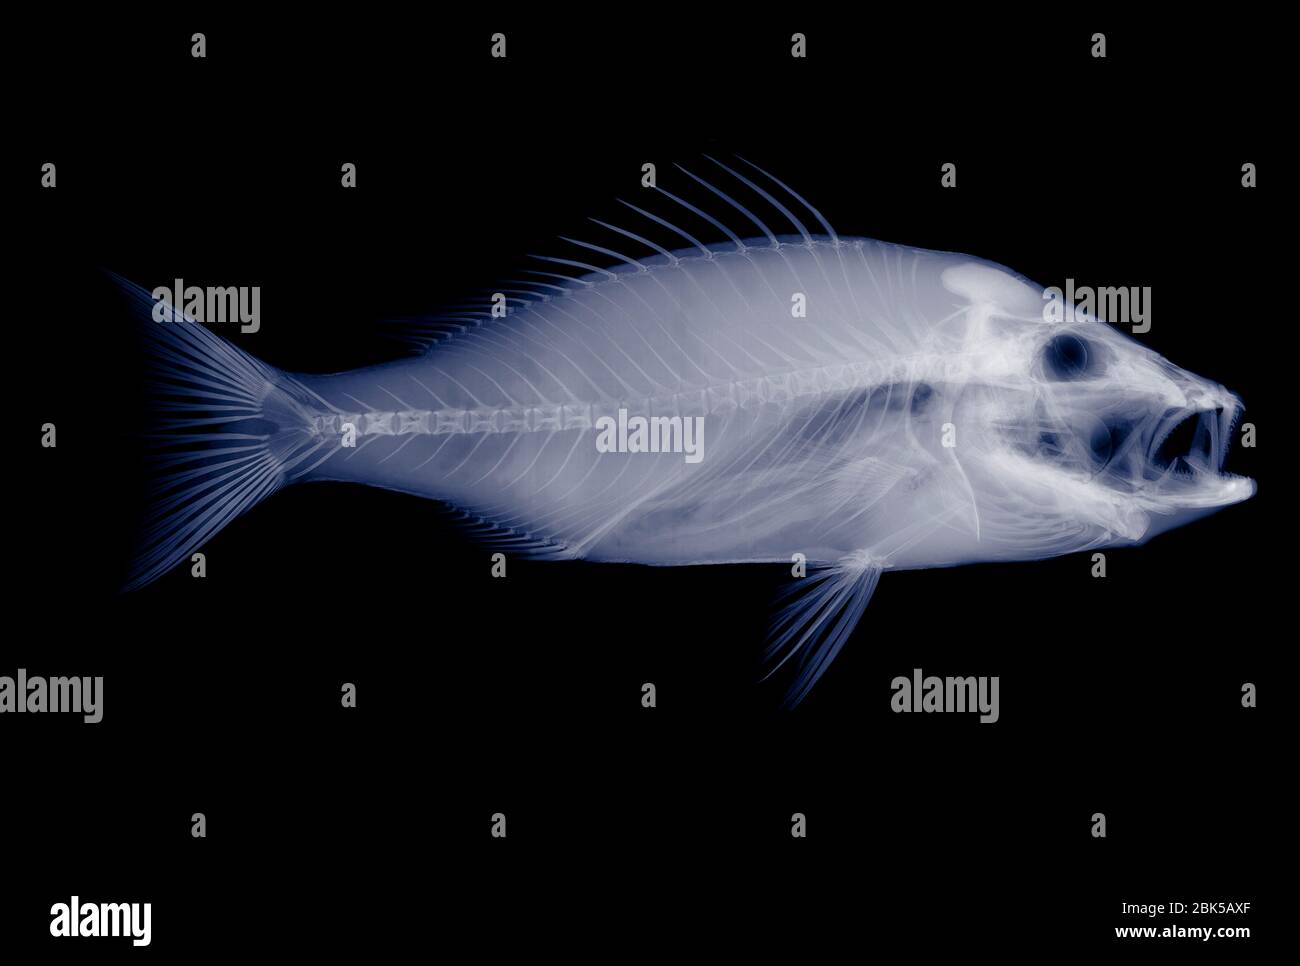 Fish, X-ray. Stock Photo